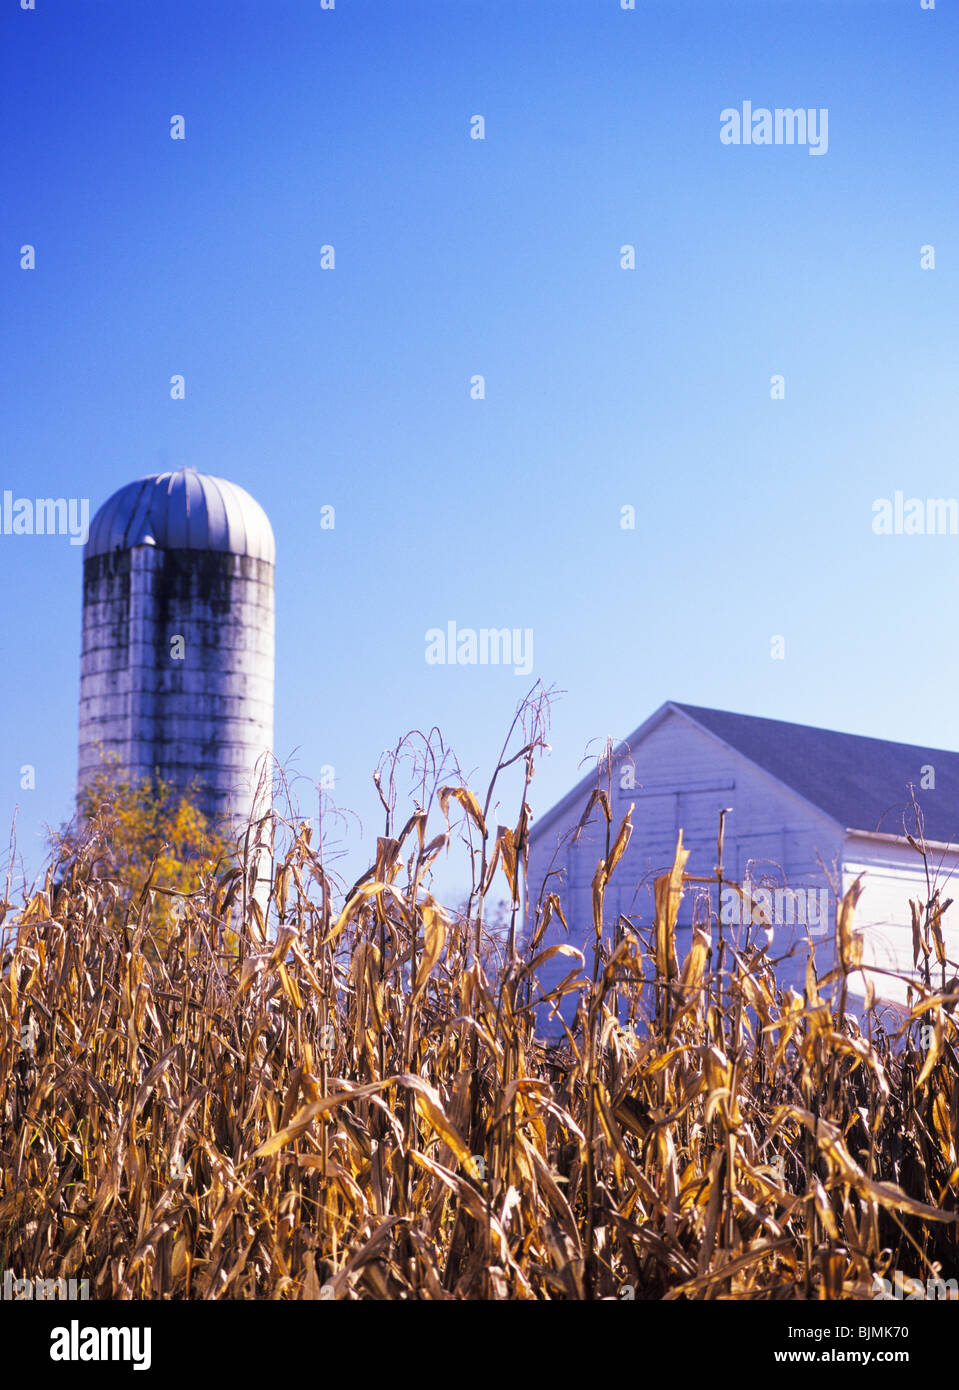 Les tiges de maïs récolté d'or, white barn et silo en arrière-plan, tôt le matin, à l'automne dans le comté de Lancaster, Pennsylvanie, USA Banque D'Images